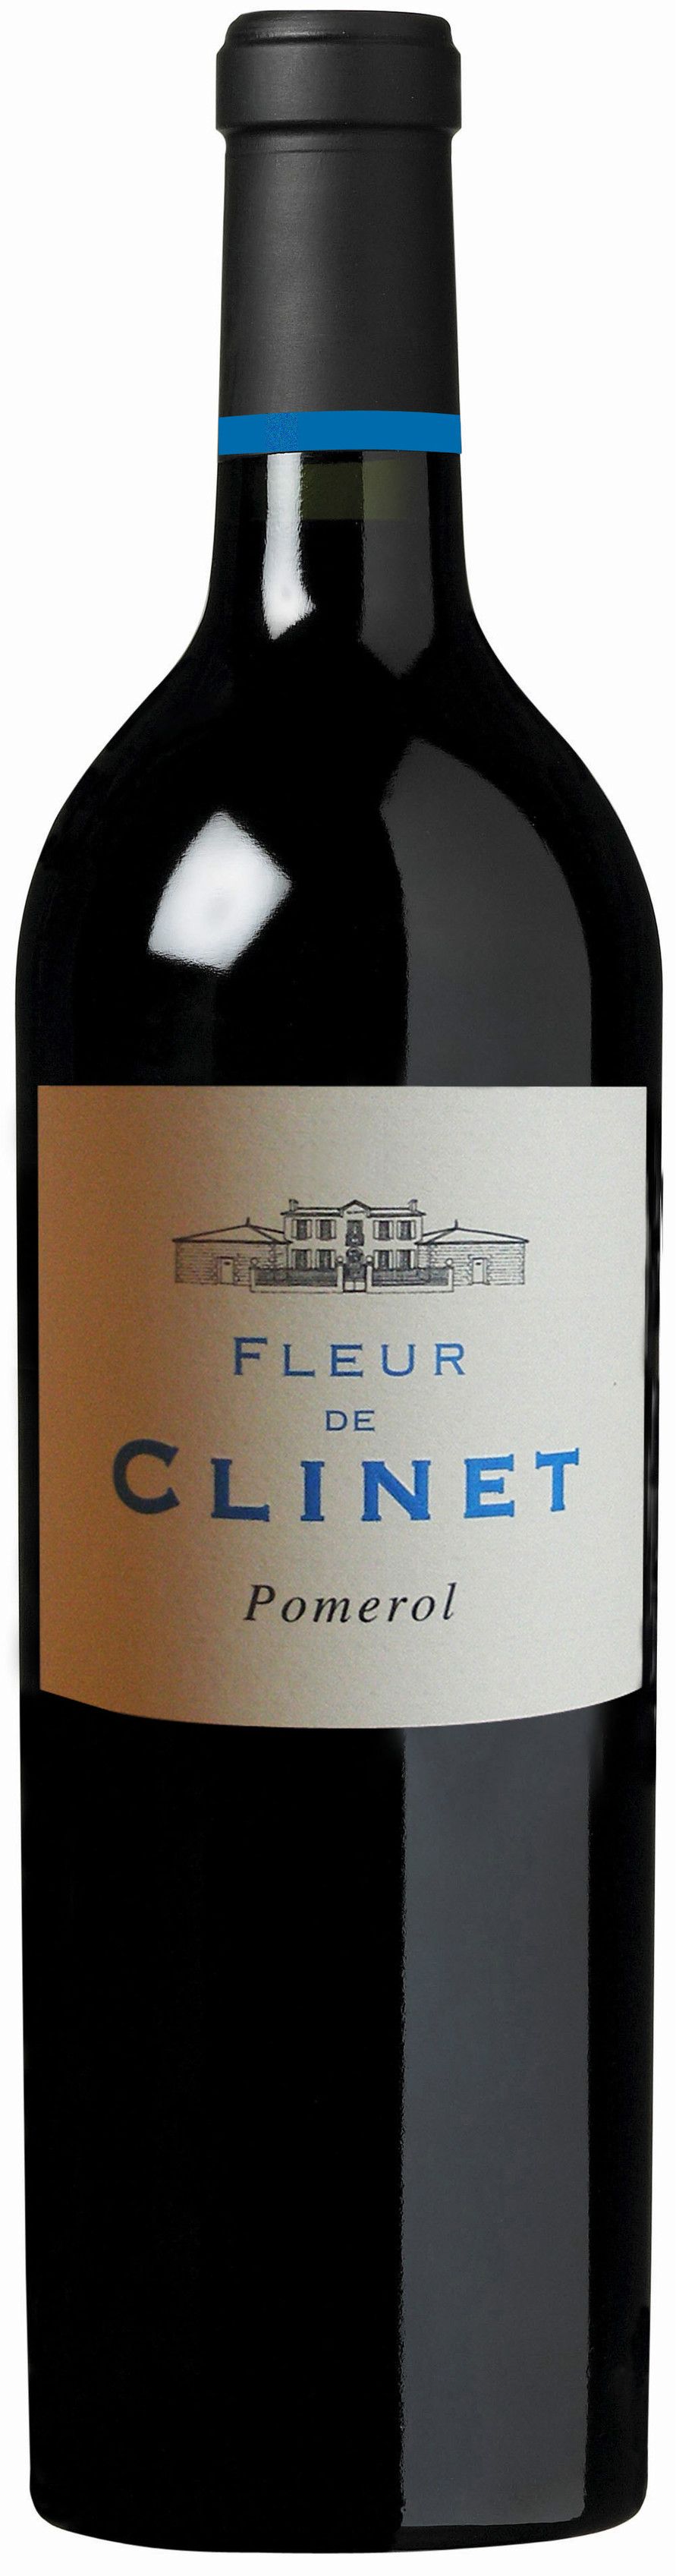 Chateau Clinet, Fleur De Clinet, 2009